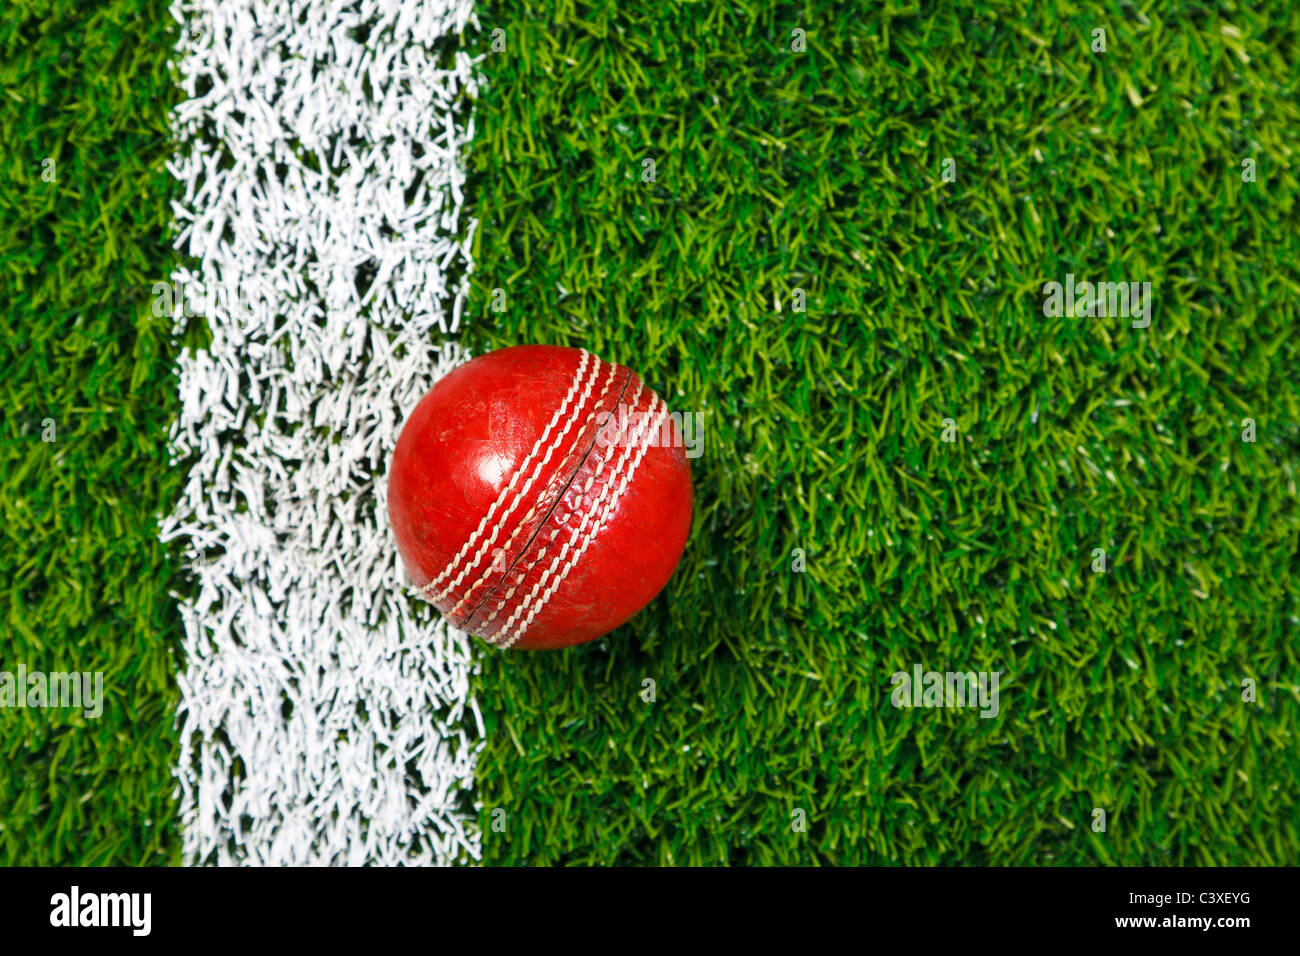 Foto de una bola de críquet sobre un césped junto a la línea blanca, tomada desde arriba. Foto de stock